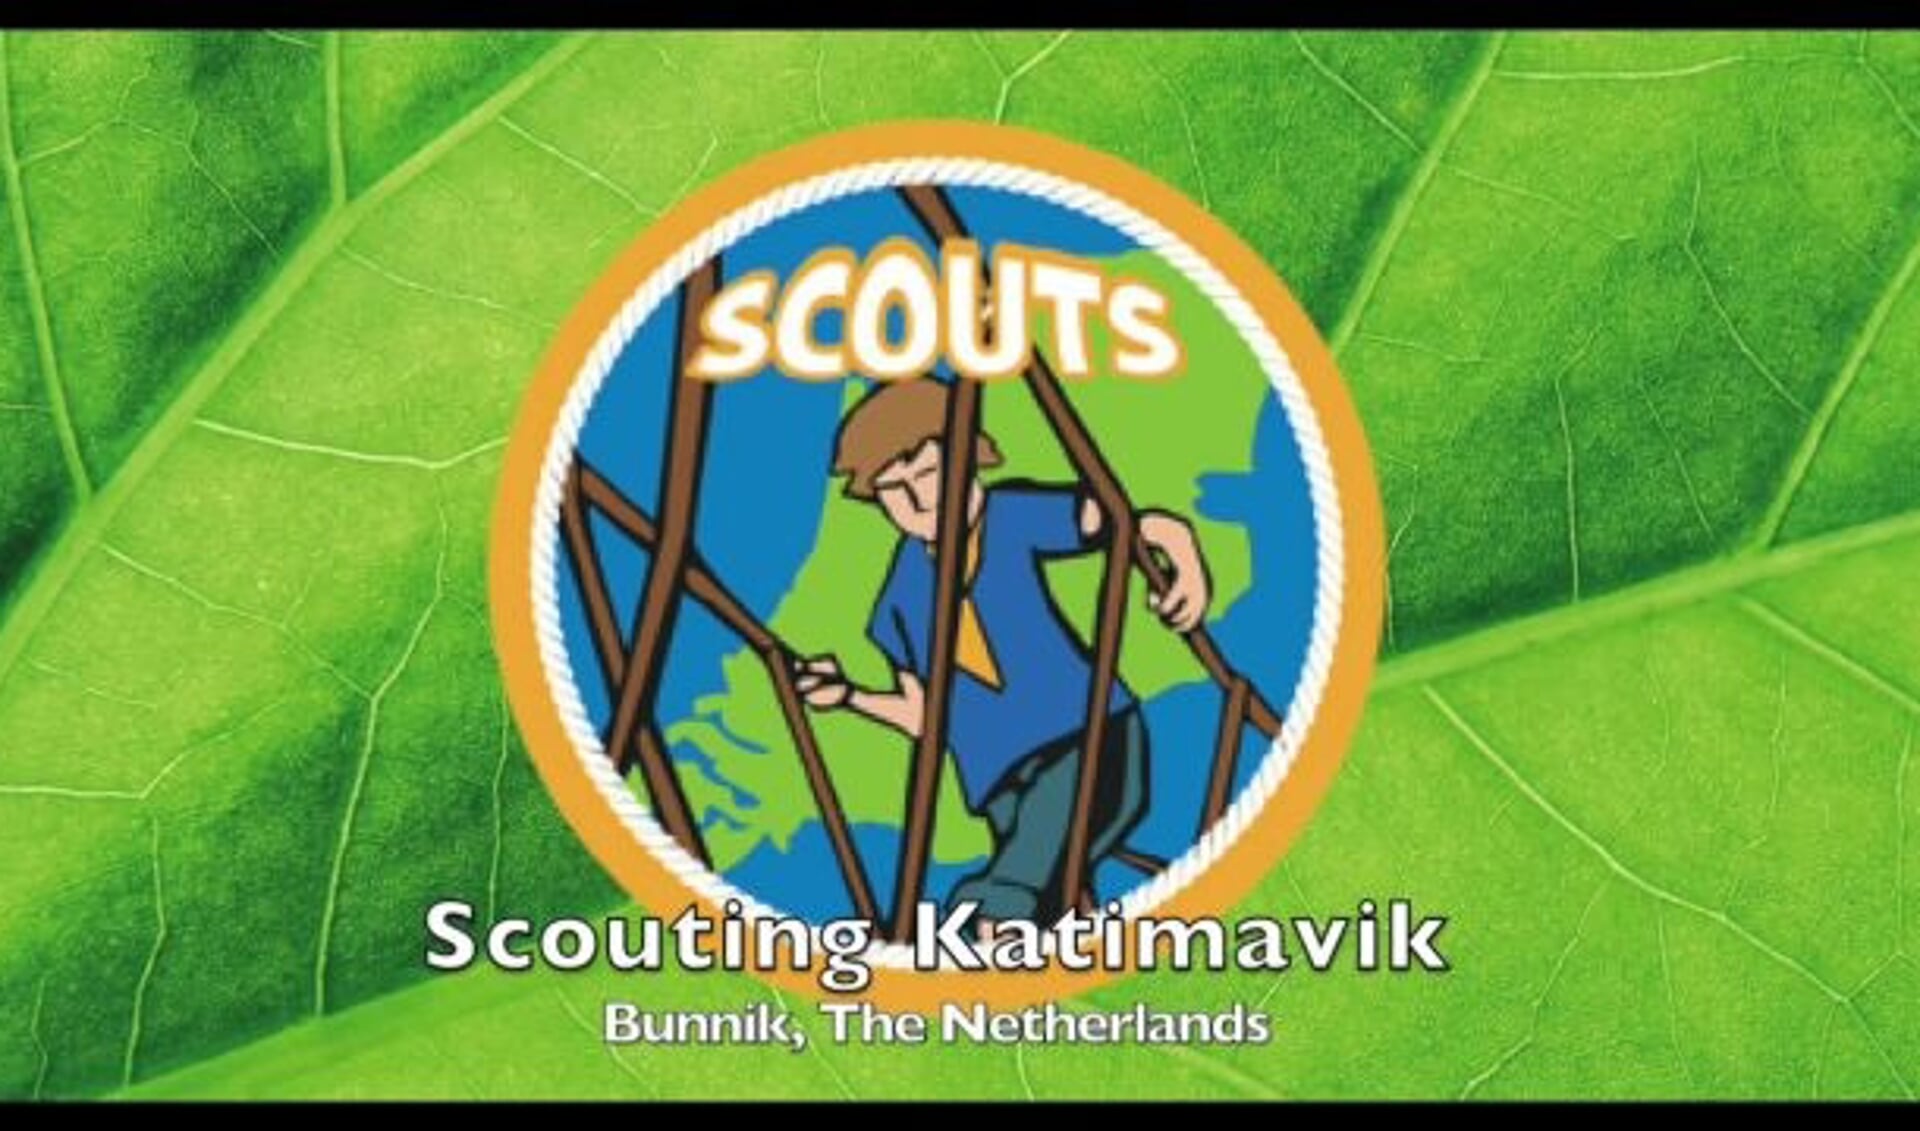 Scouting Katimavik verbindt scouts over de hele wereld